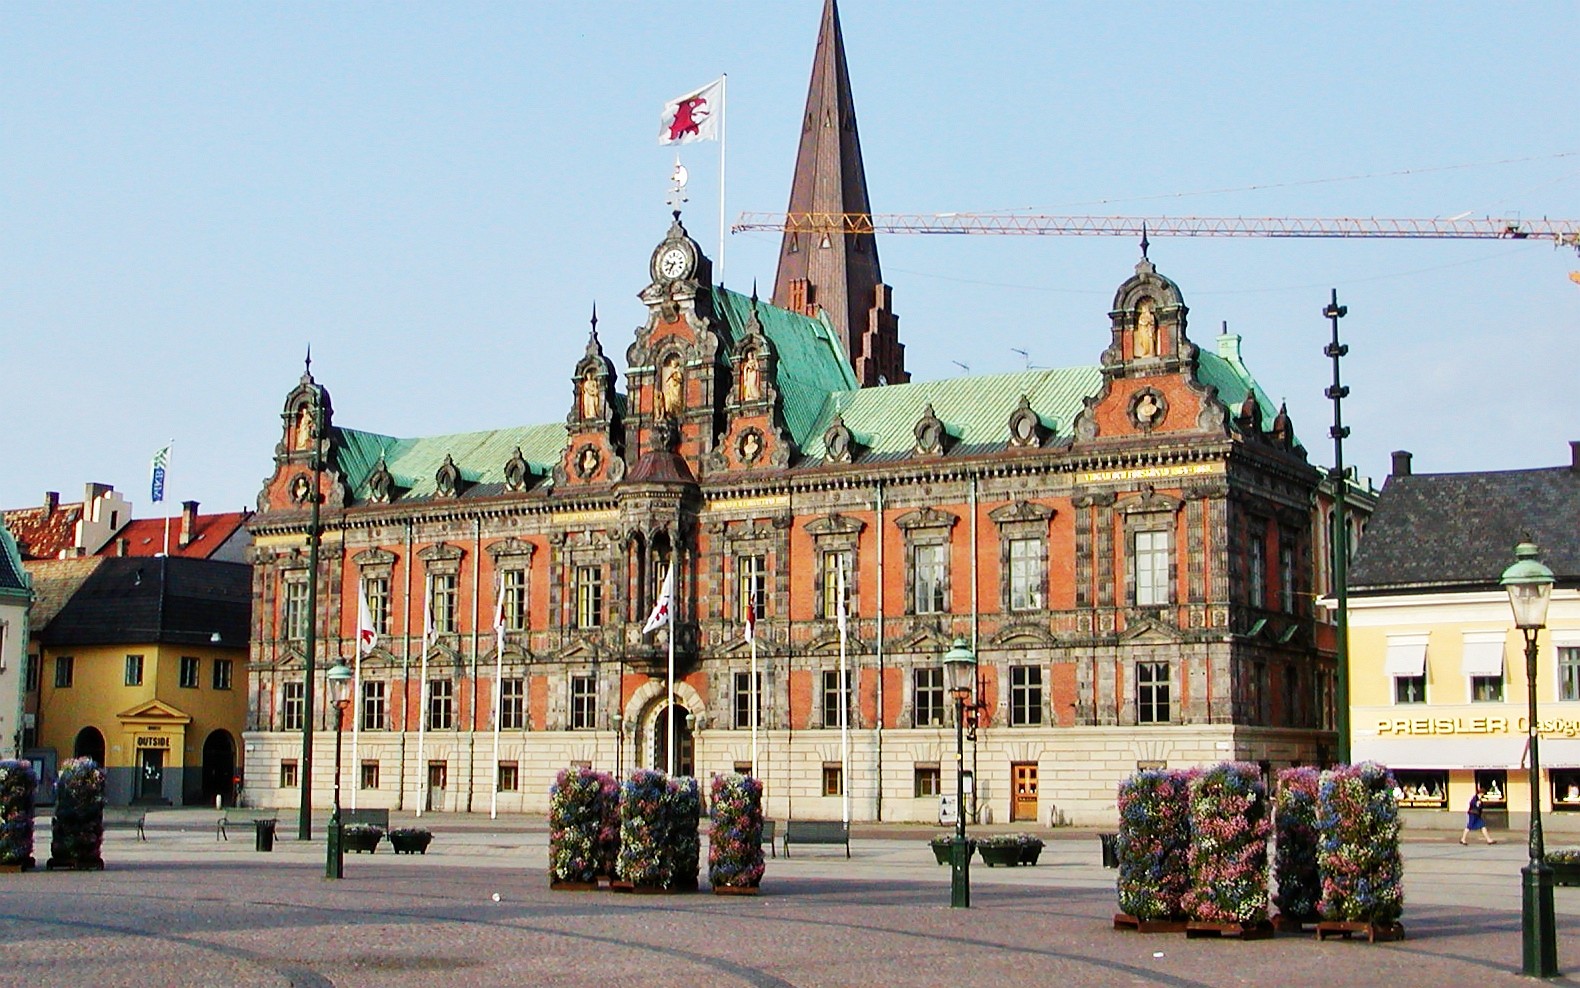 Malmö City Hall